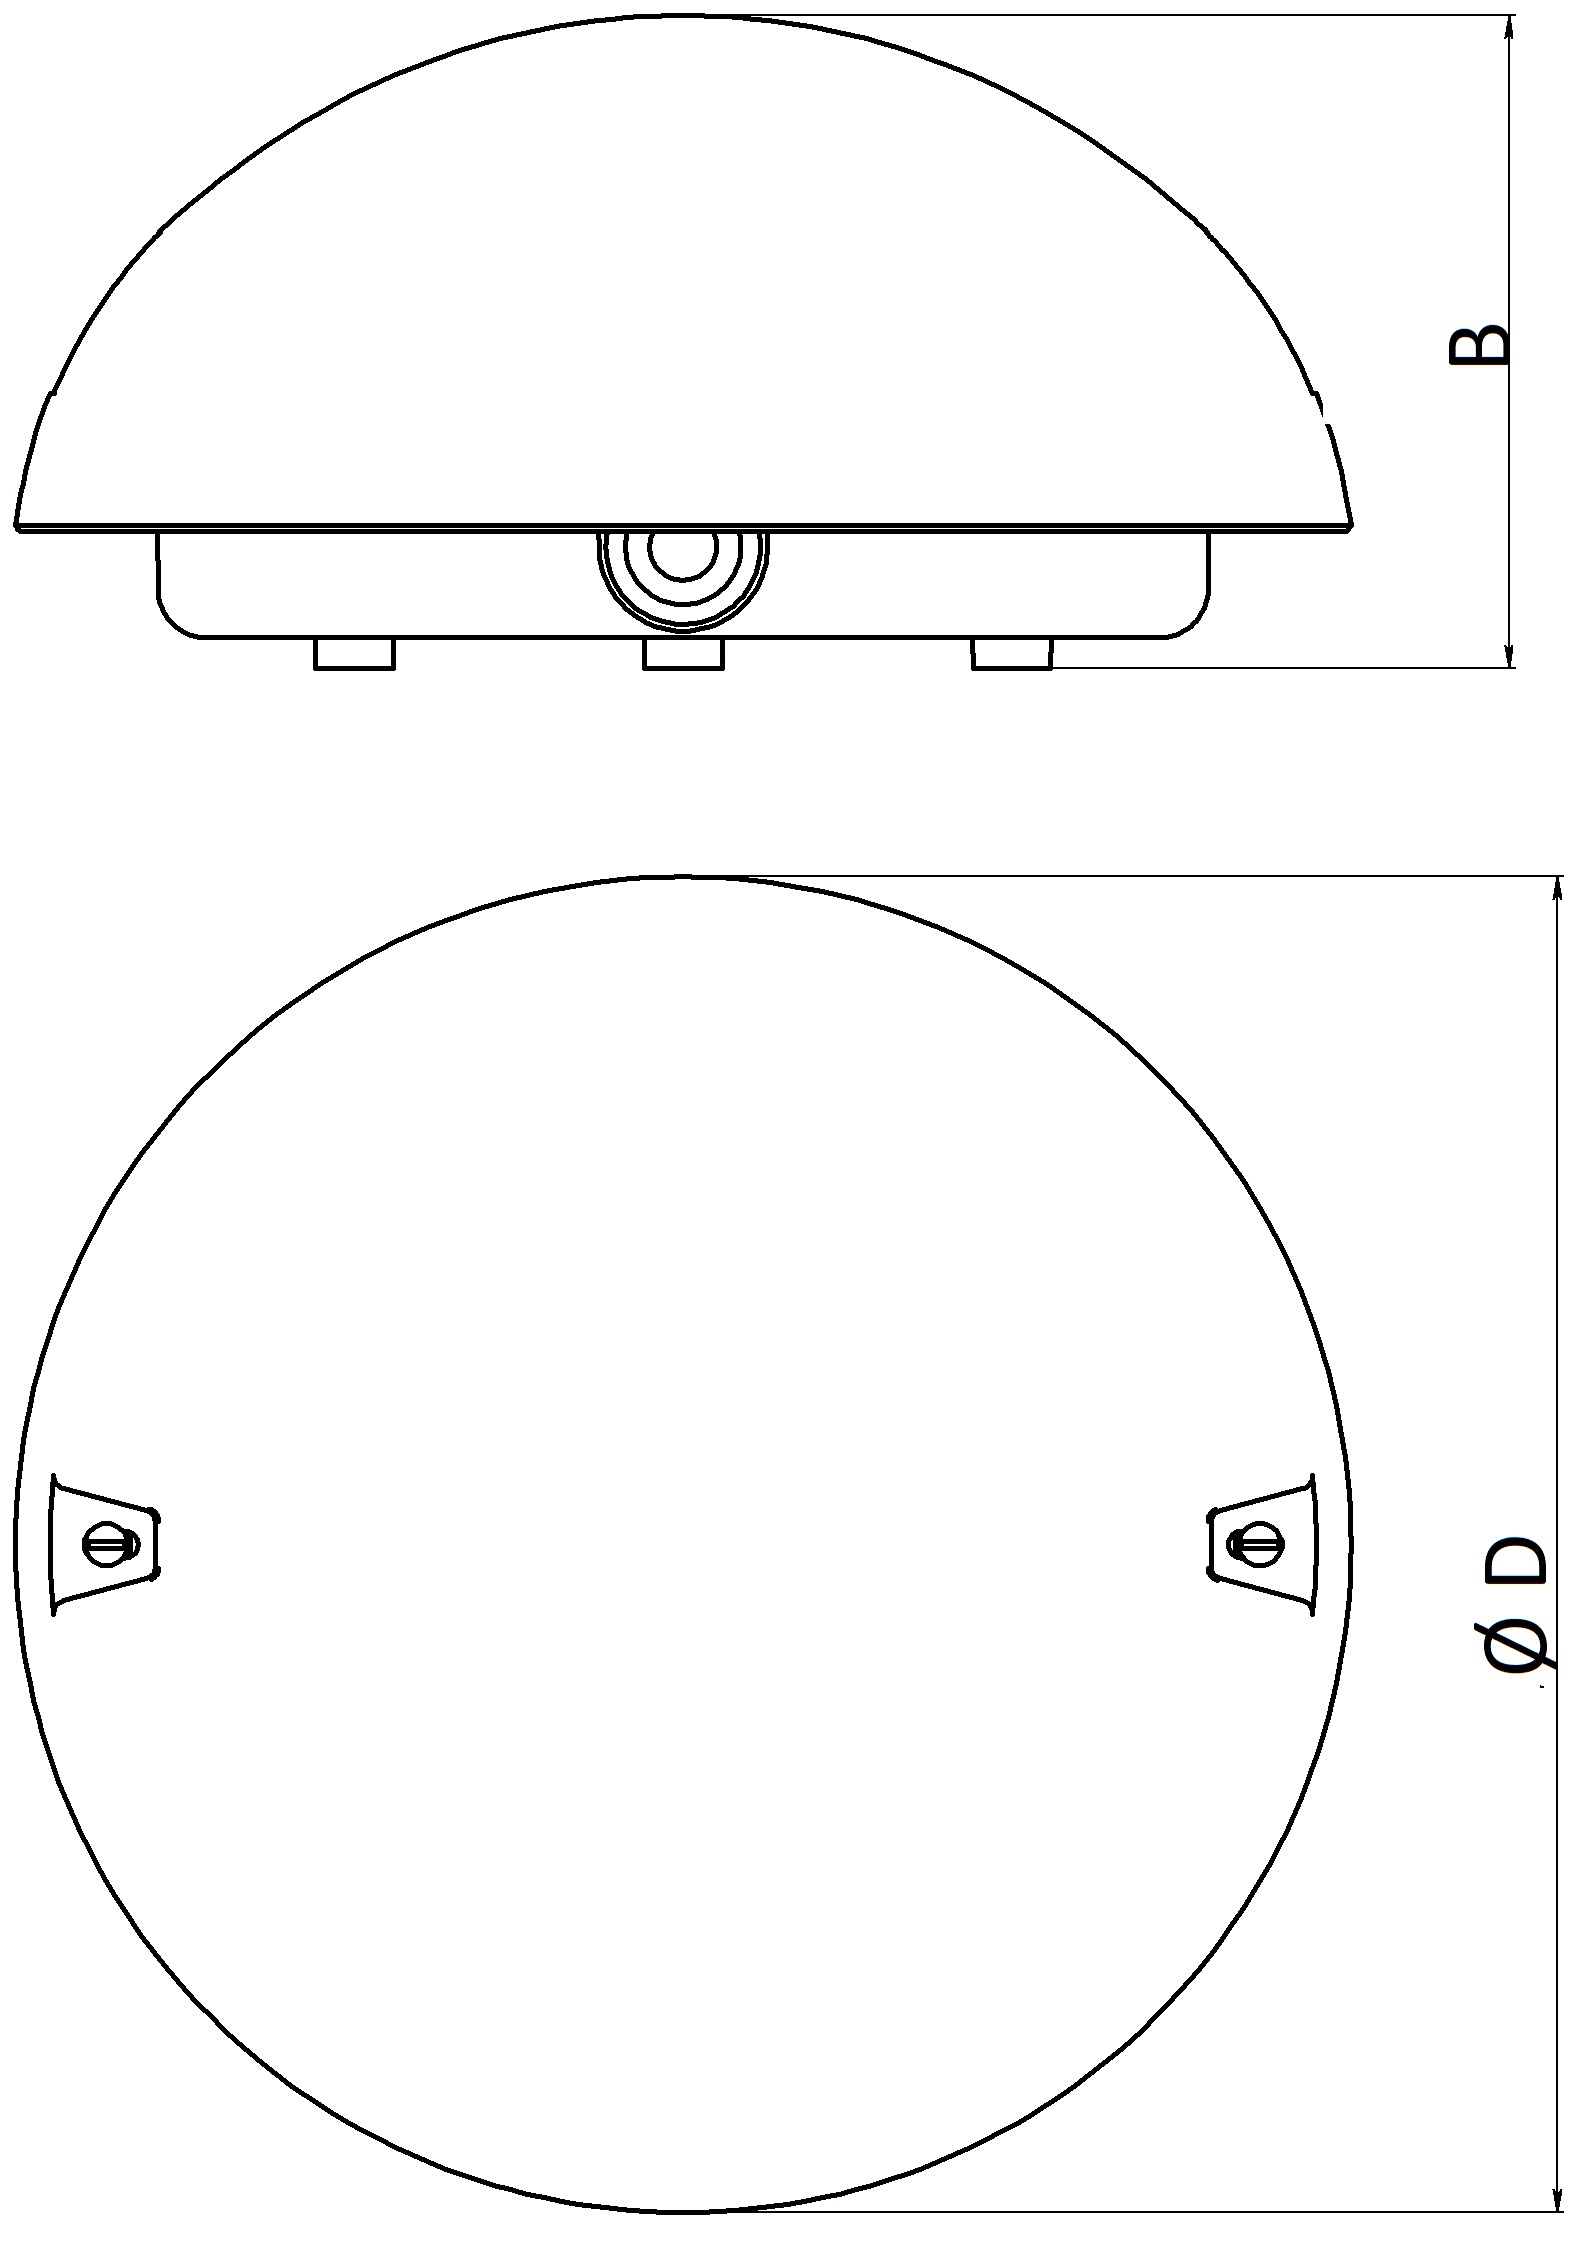 Светильник промышленный ЭРА Сириус 60Вт, цоколь E27, IP54, с фото-шумовым датчиком, форма - круг, цвет - белый